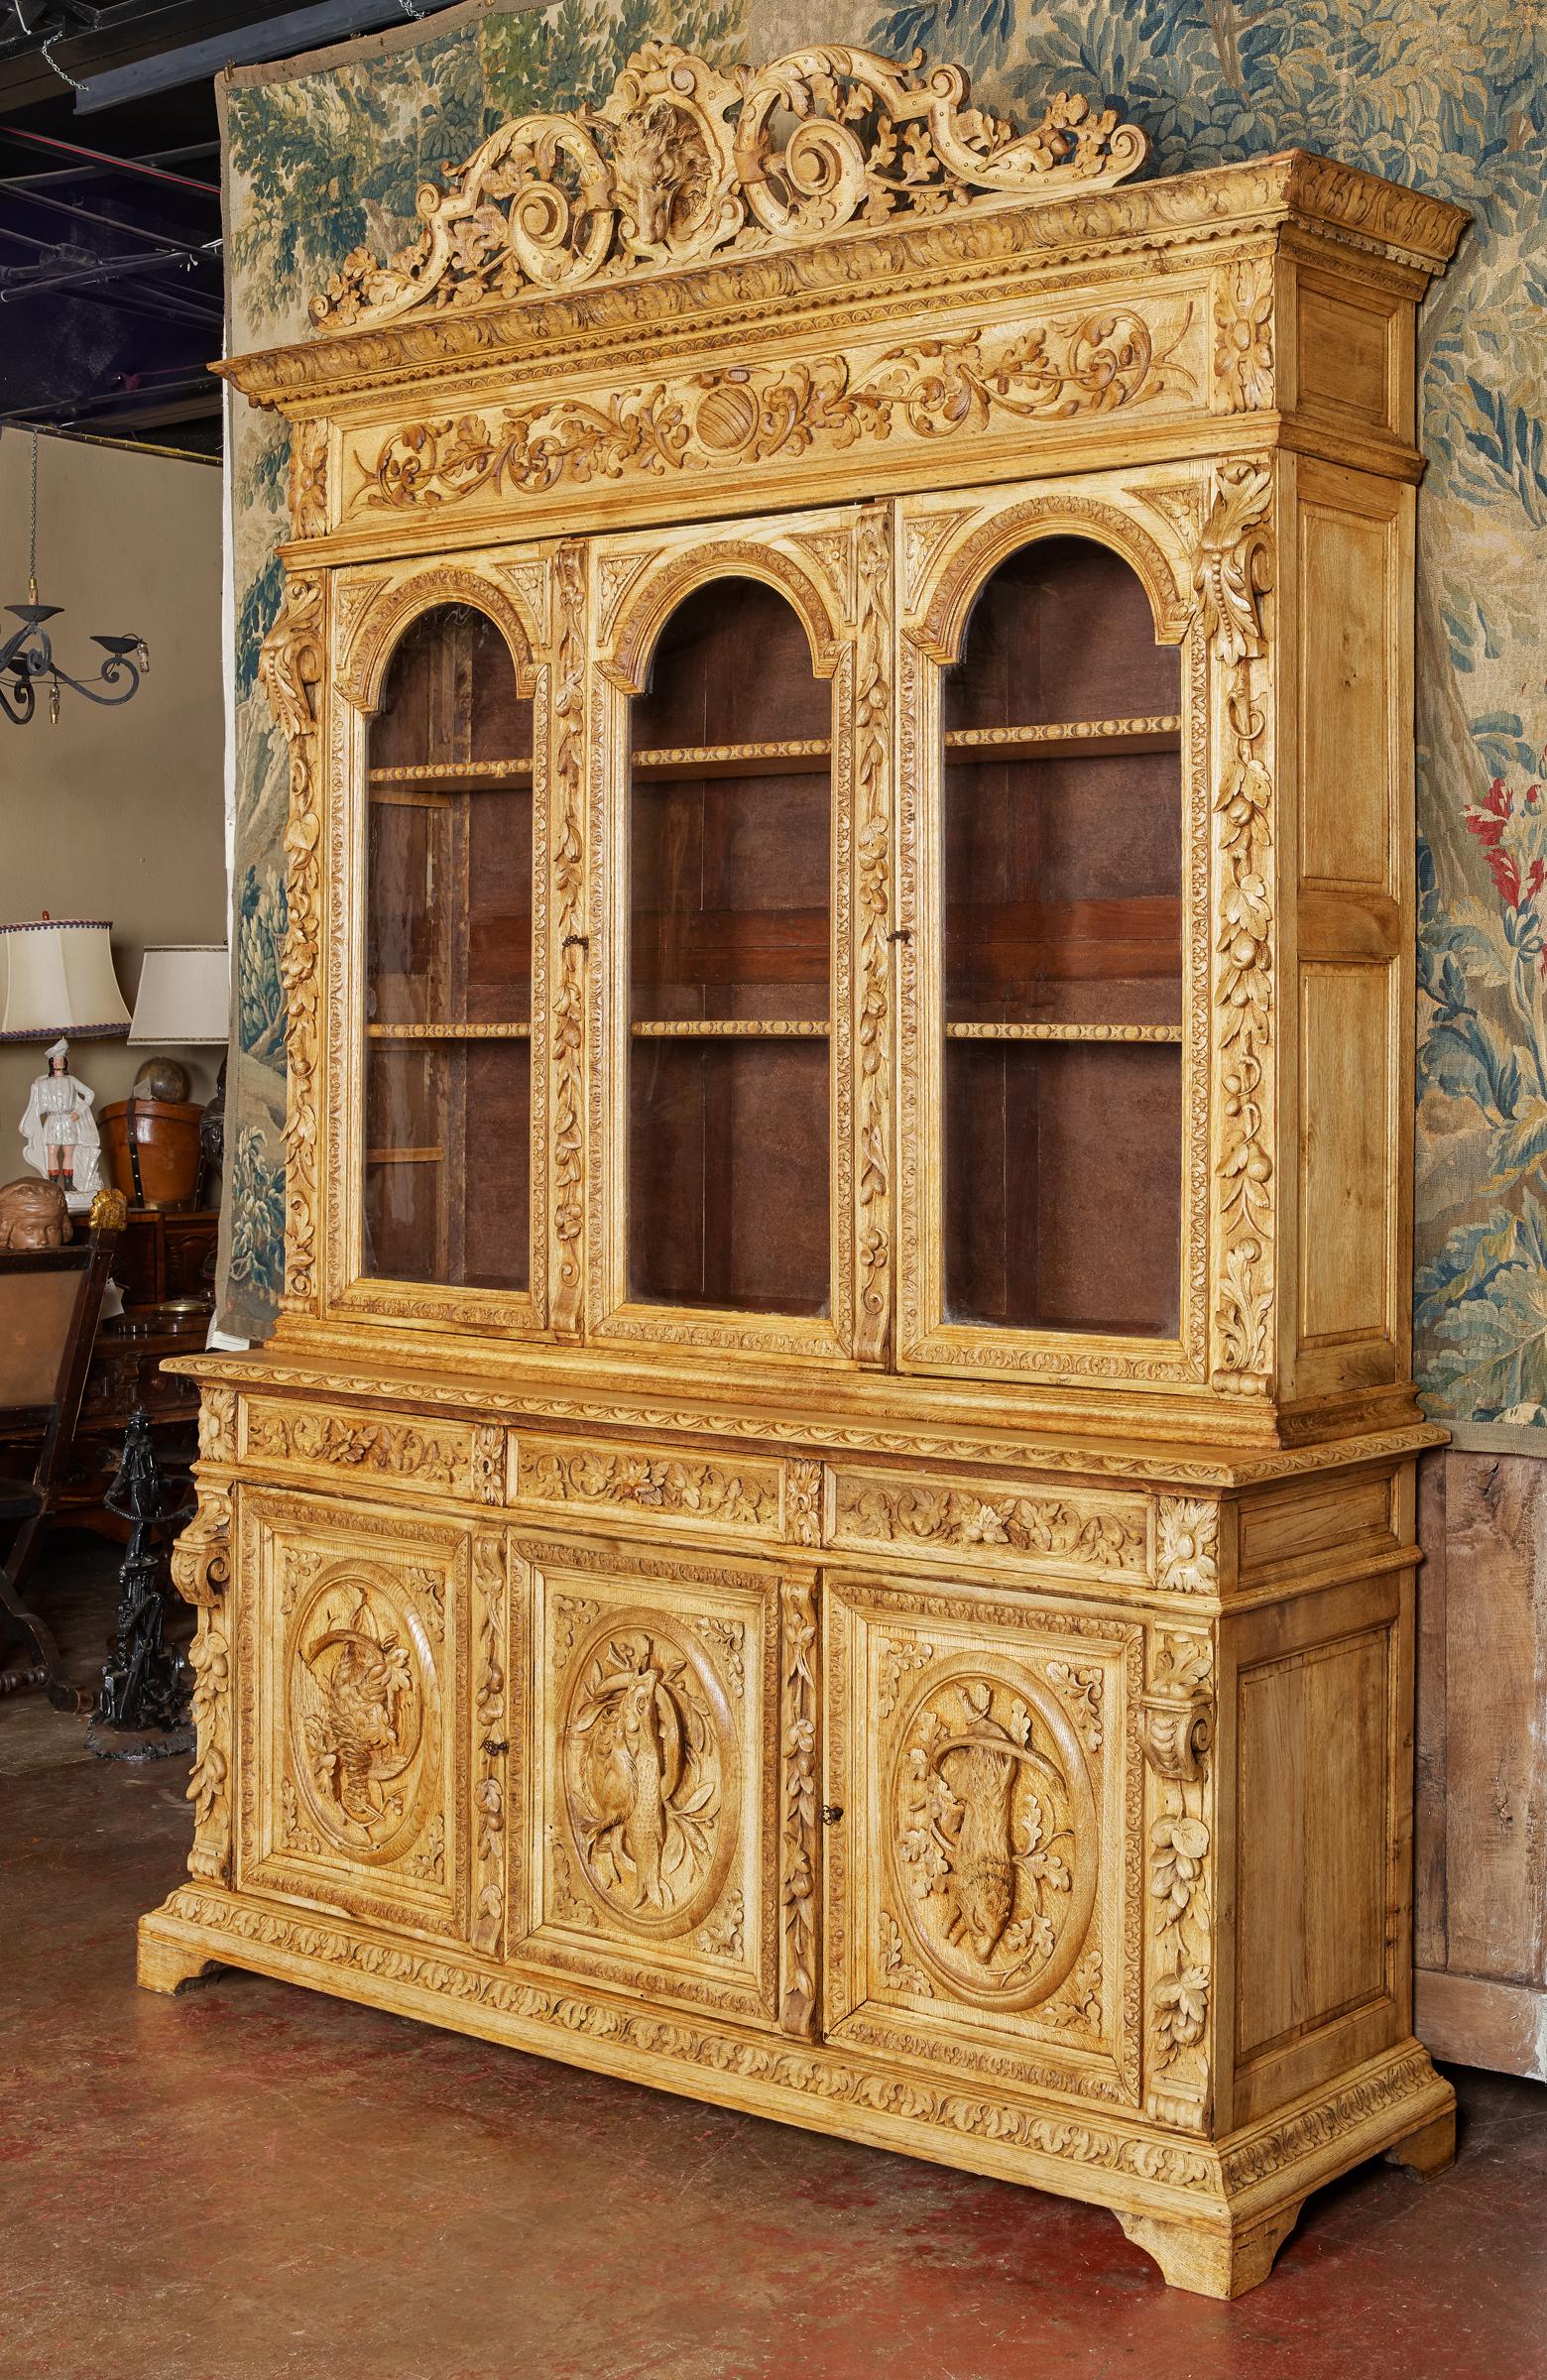 Dieser spektakuläre antike Jagdschrank wurde um 1870 in Nordfrankreich hergestellt. Das große Bücherregal in zwei Abschnitten gebaut, steht auf einem geformten Basis weiter auf Klammerfüßen erhöht, und verfügt über exquisite Schnitzereien ab dem